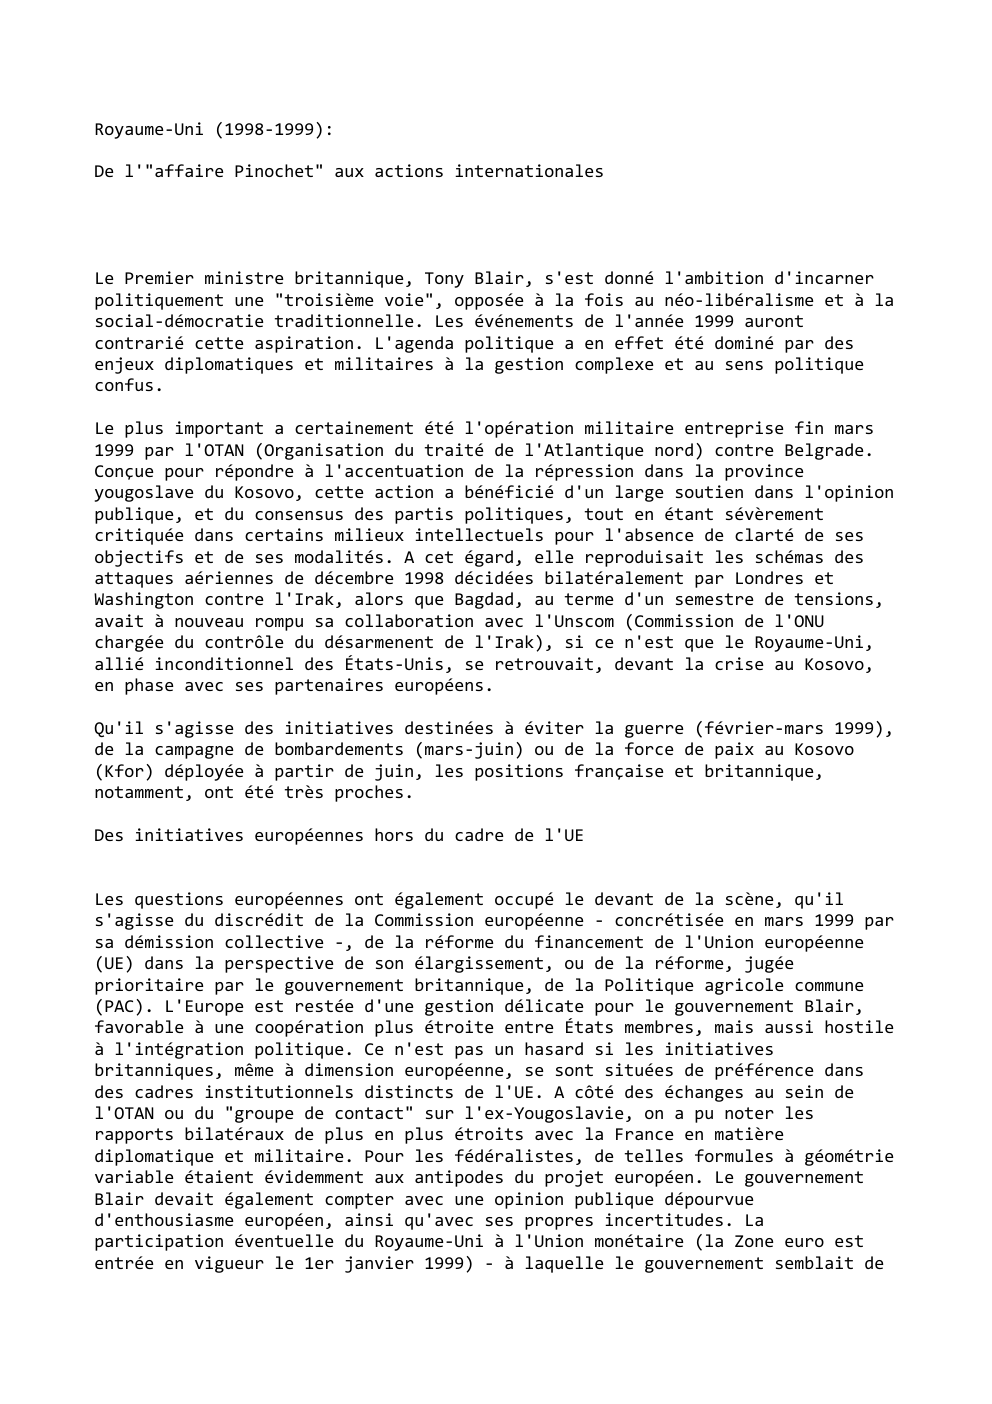 Prévisualisation du document Royaume-Uni (1998-1999):
De l'"affaire Pinochet" aux actions internationales

Le Premier ministre britannique, Tony Blair, s'est donné l'ambition d'incarner
politiquement une...